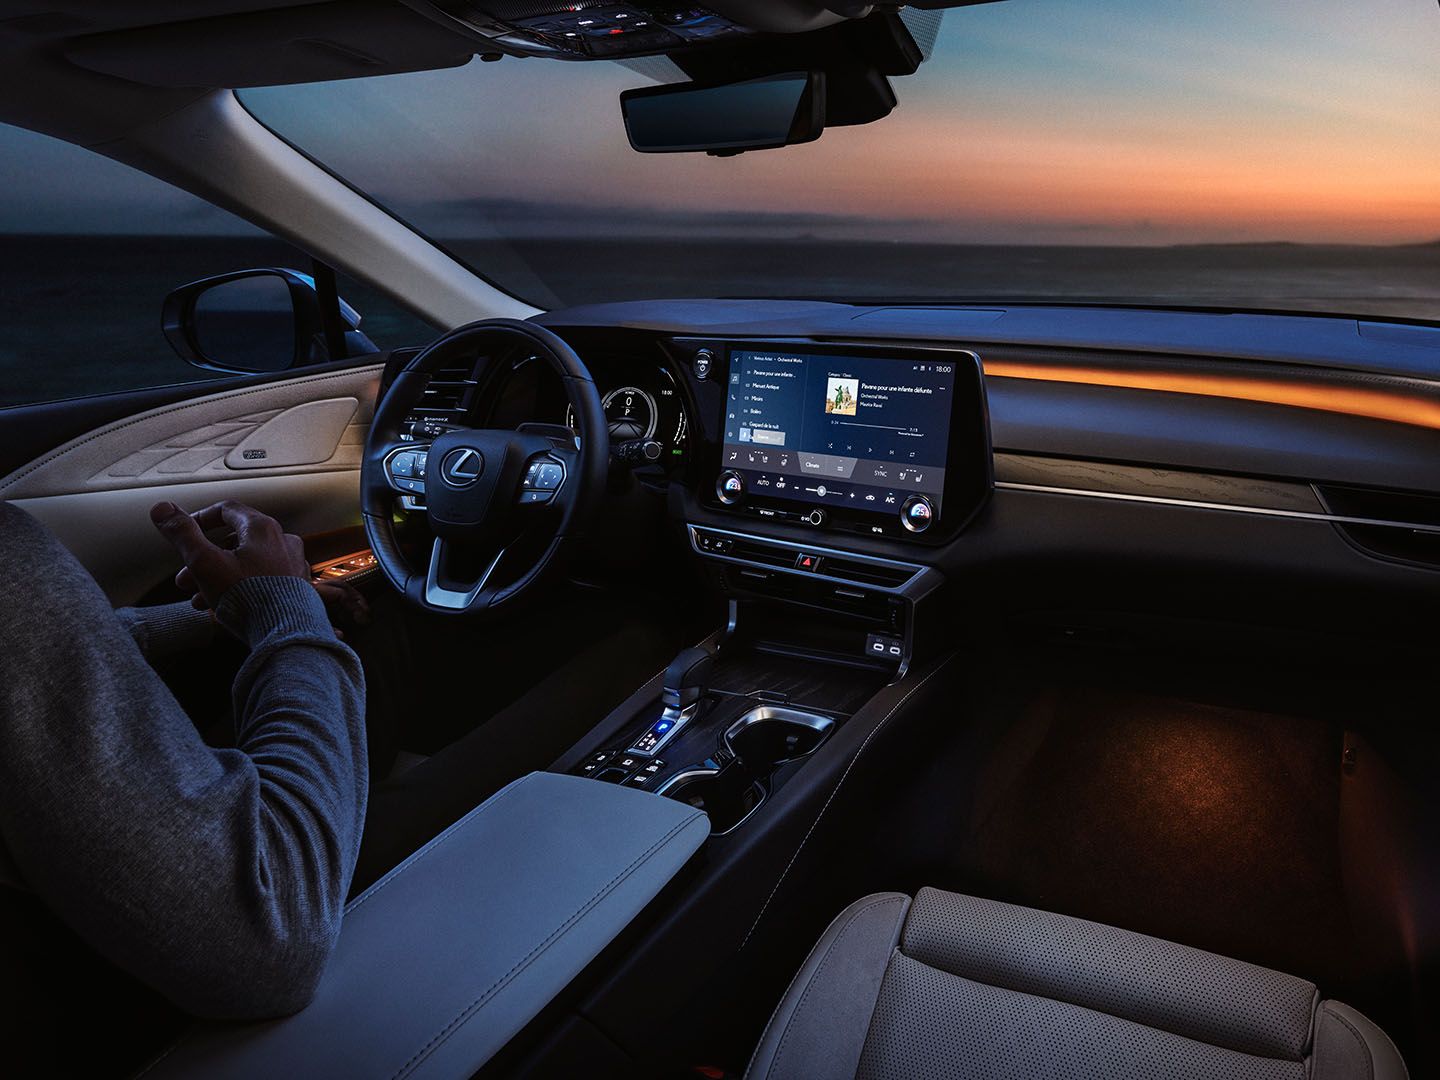 The Lexus RX interior